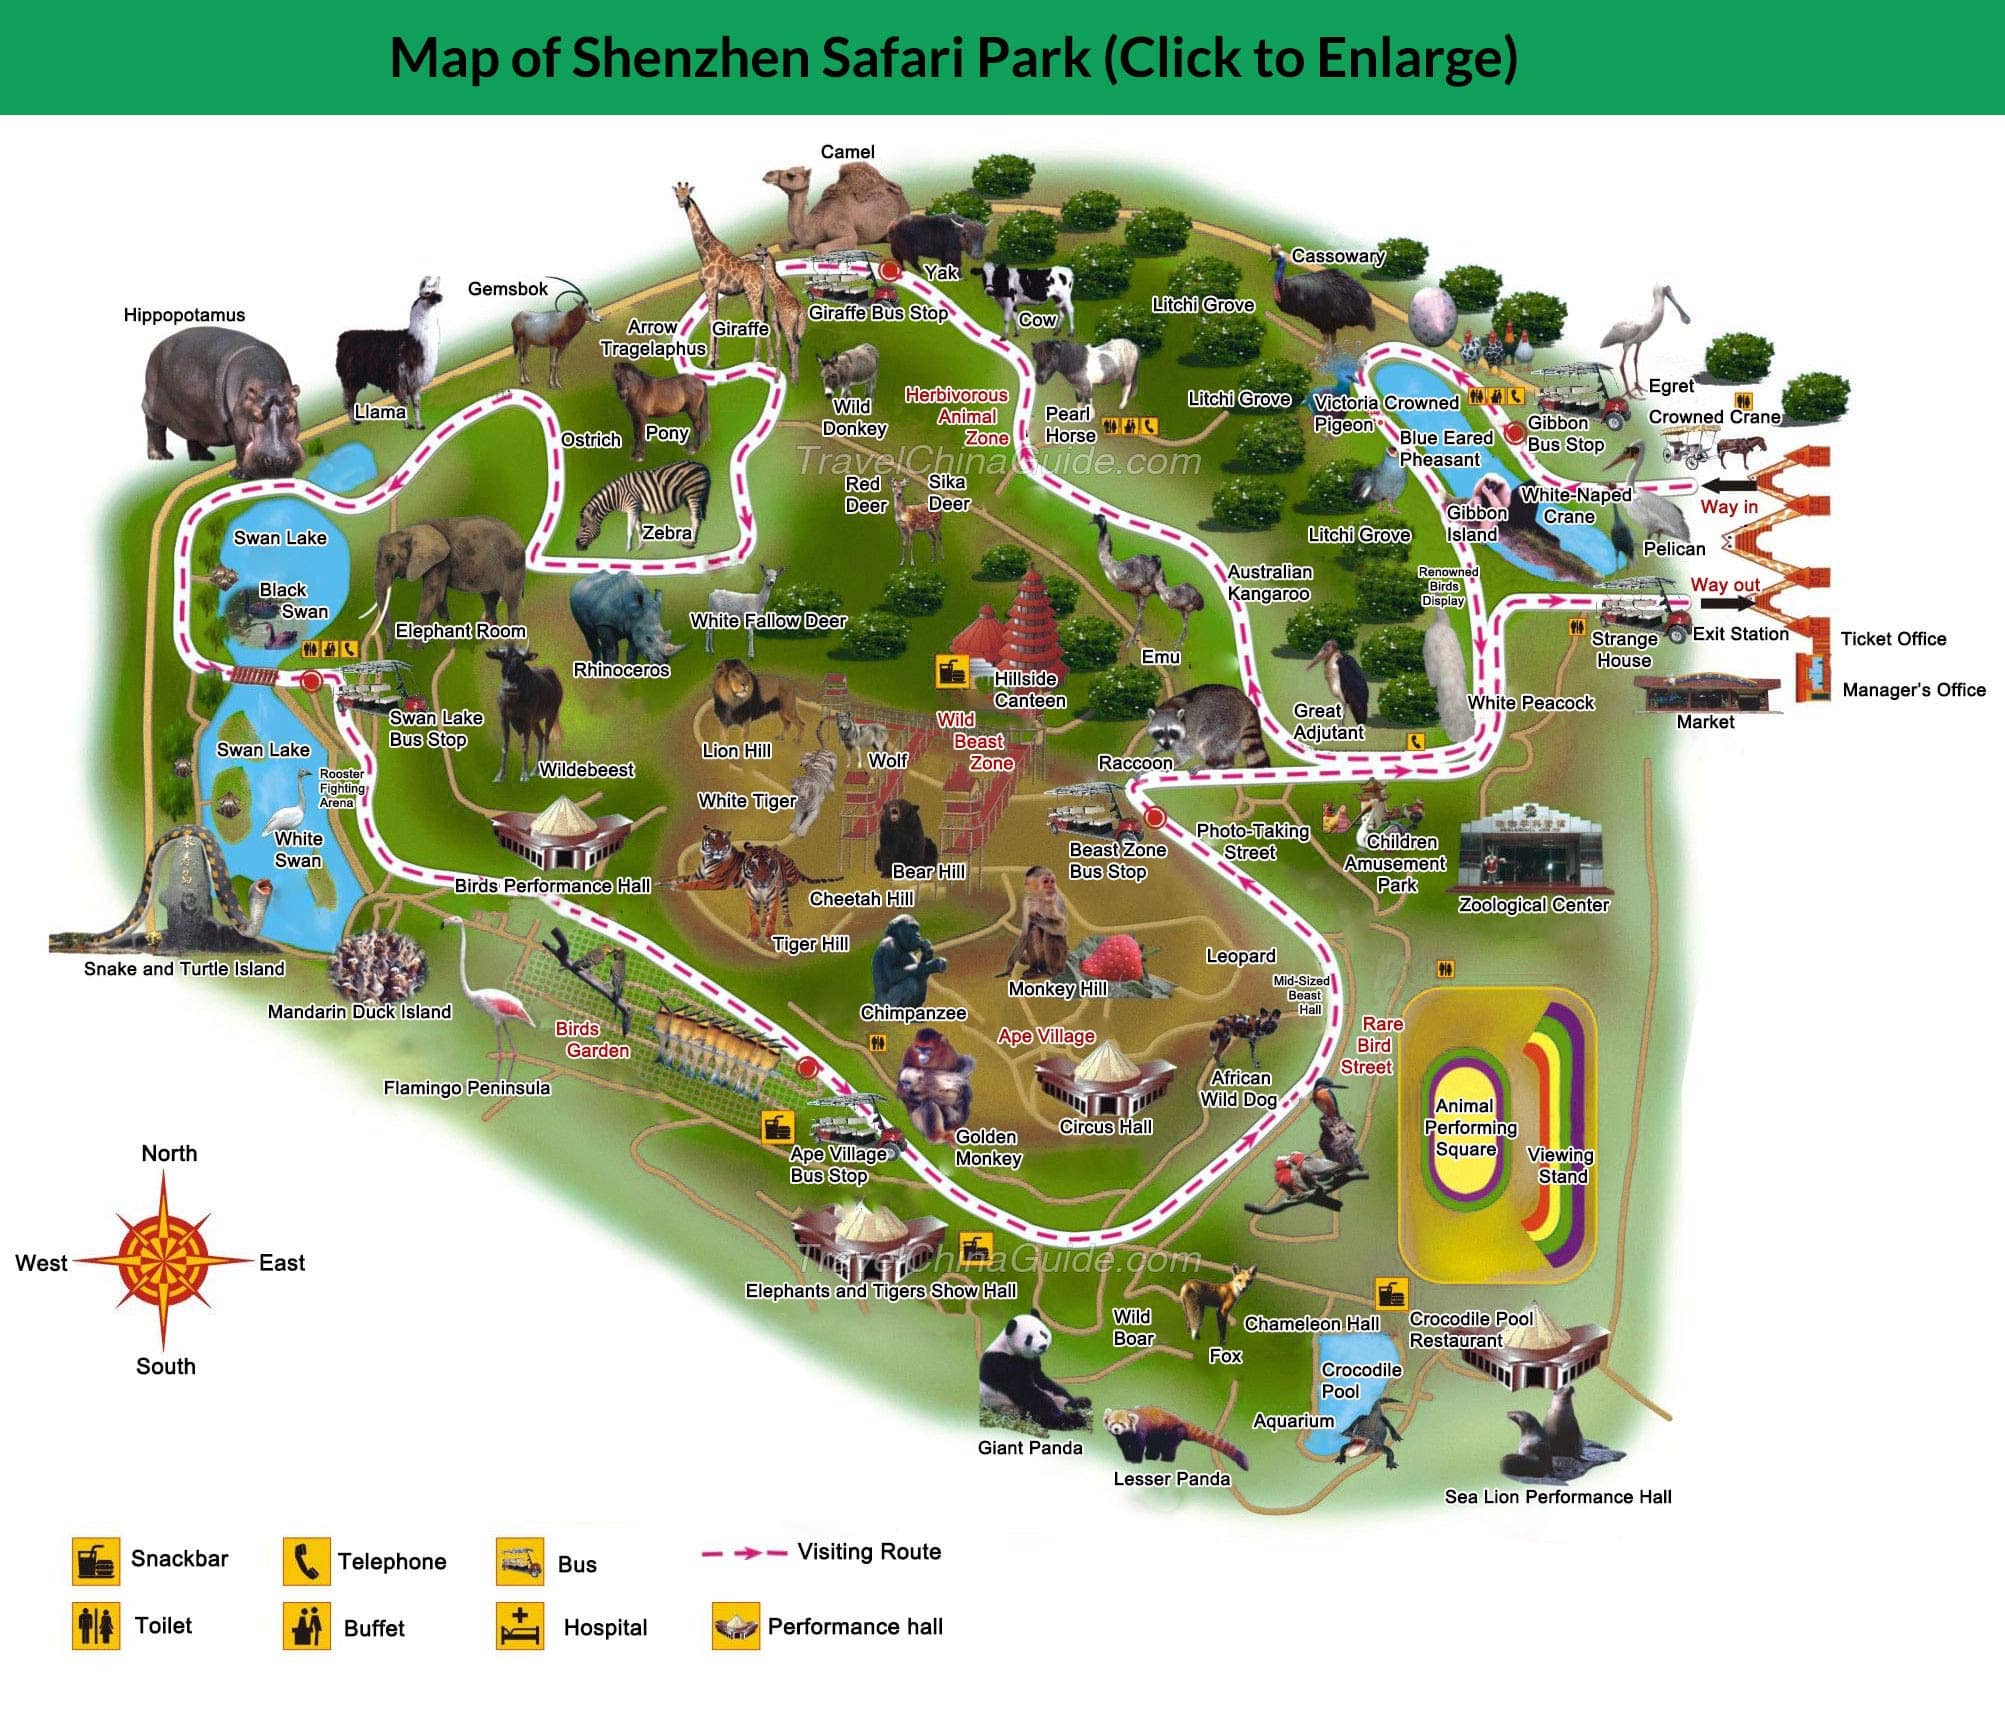 wildlife world zoo aquarium & safari park map